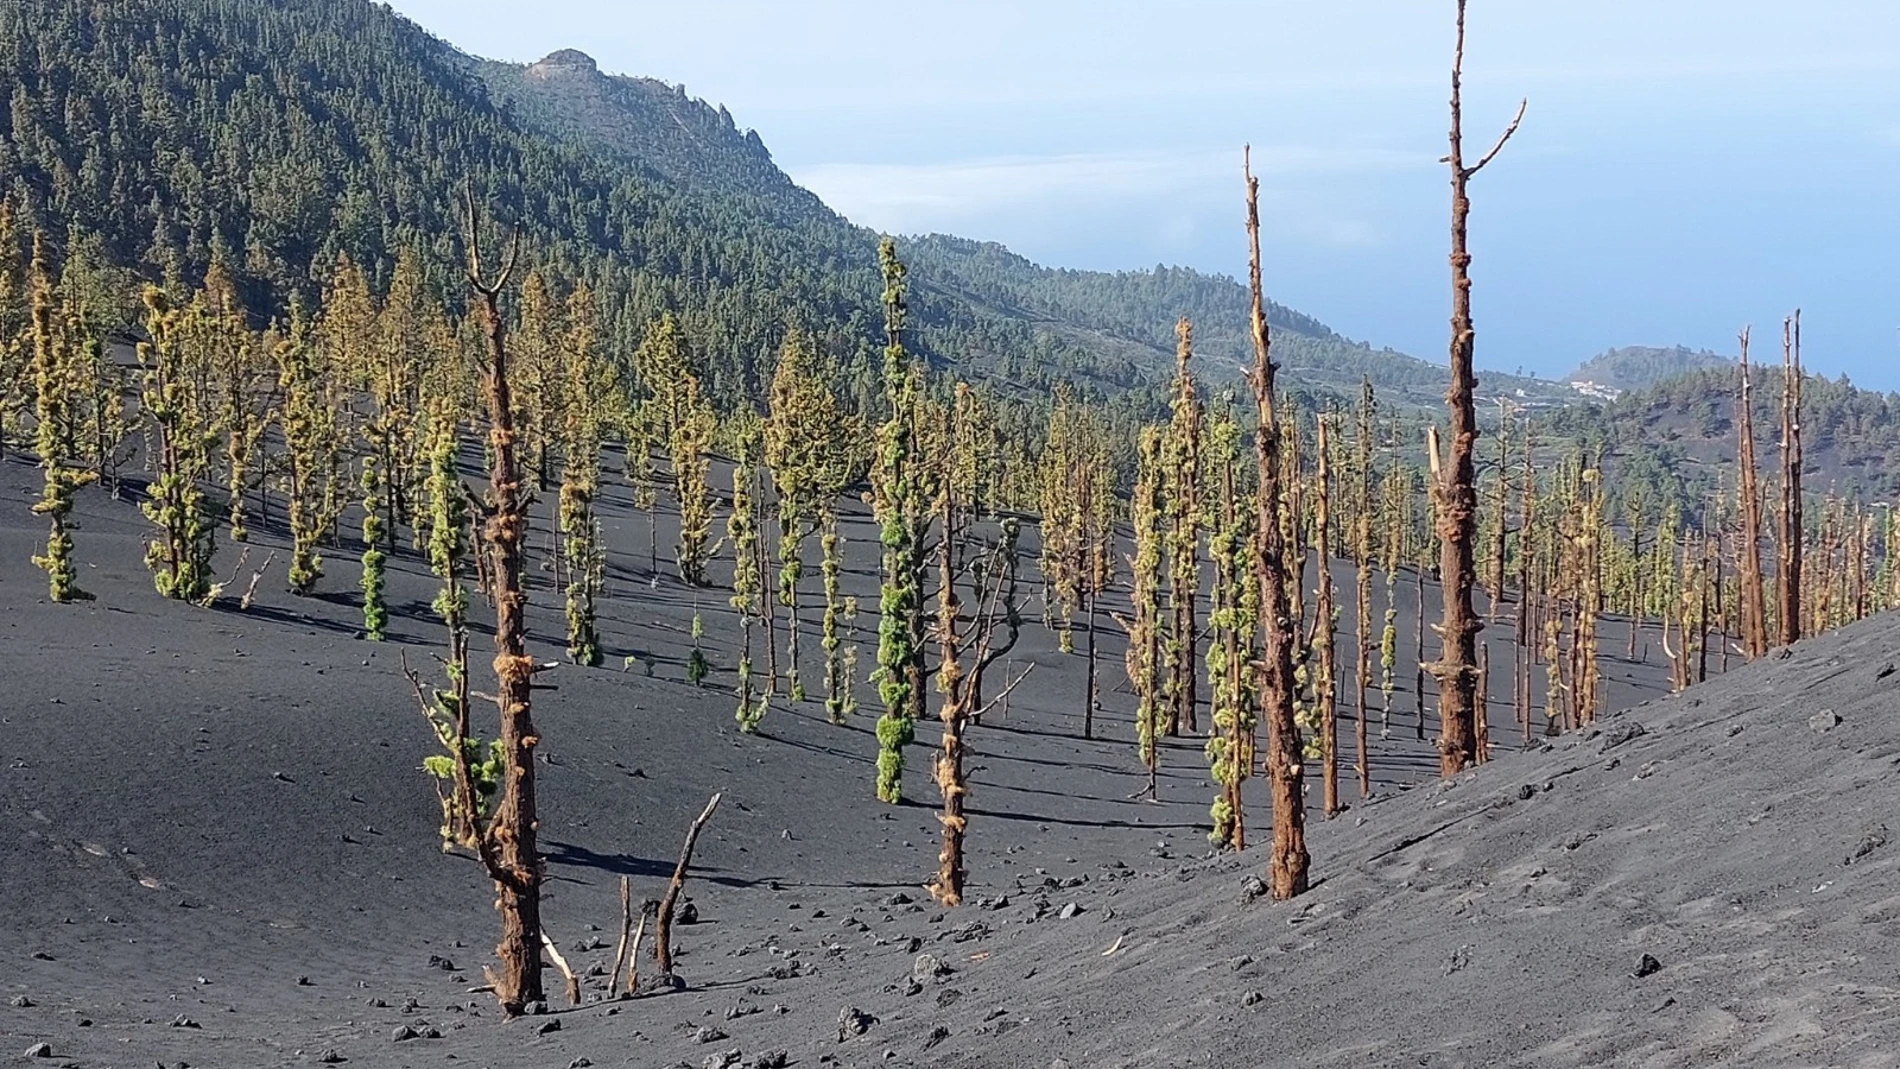 El pino canario crece cerca del cráter sur del volcán de La Palma ocho meses después de acabar la erupción